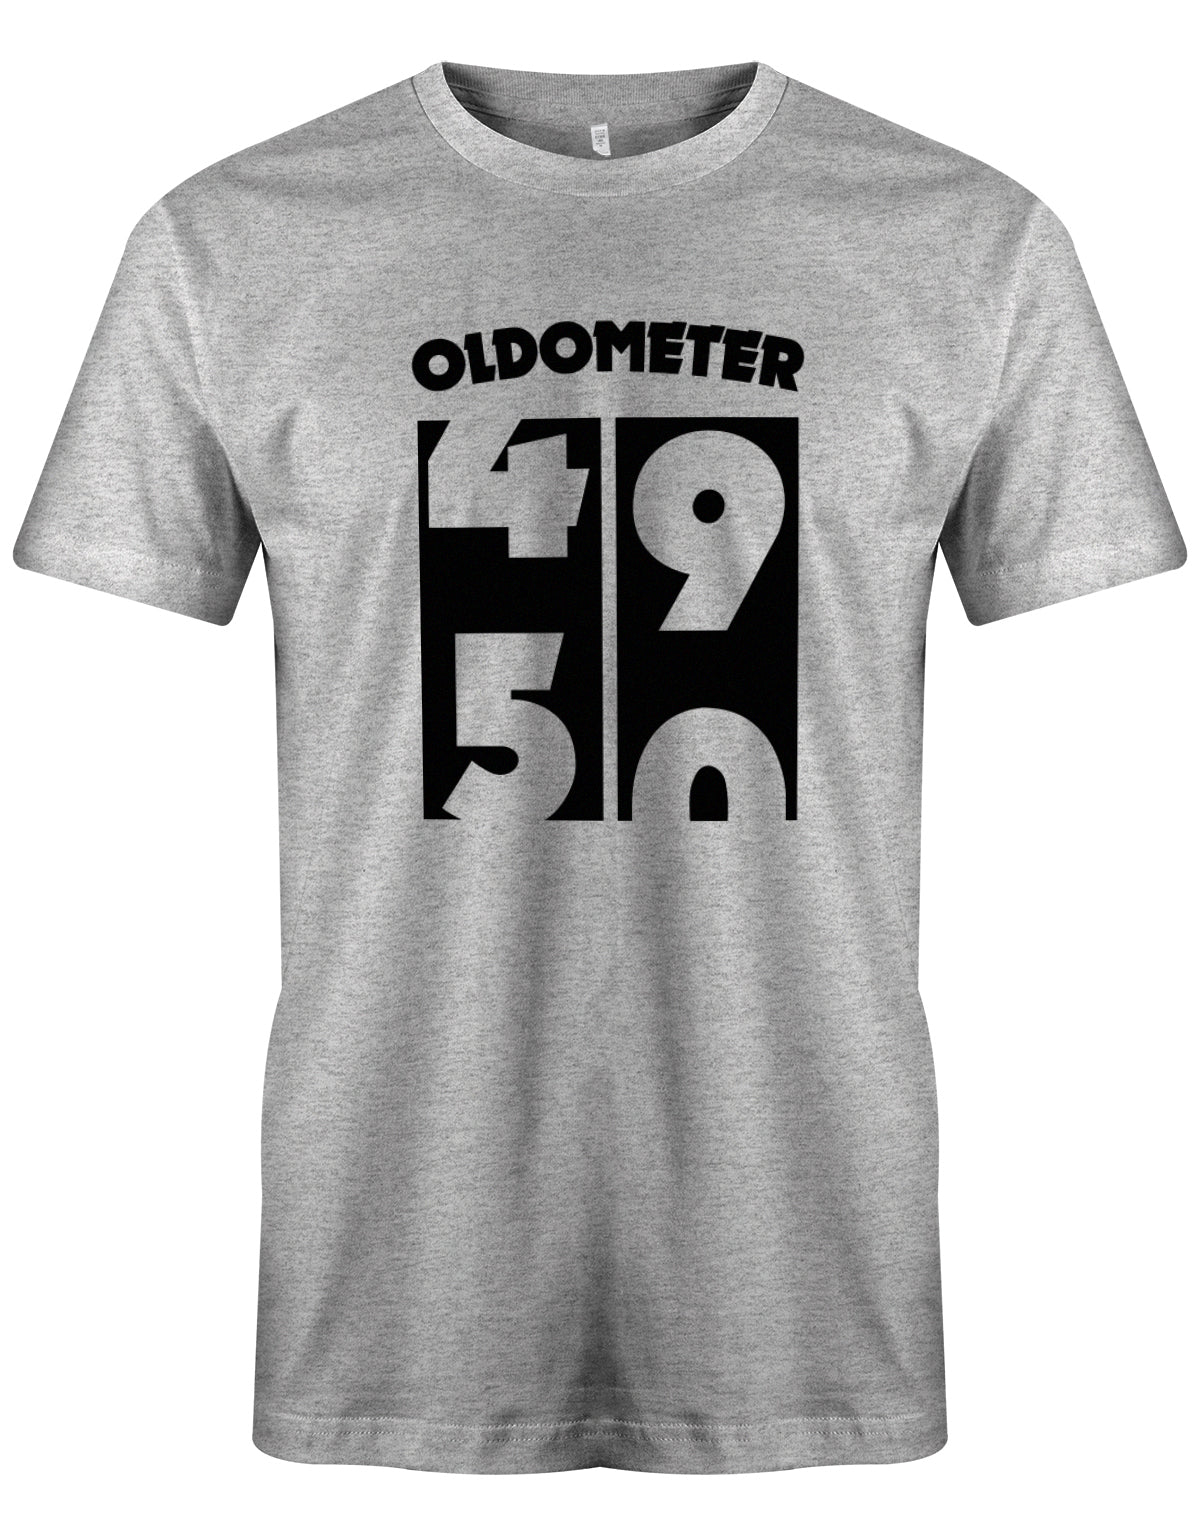 Lustiges T-Shirt zum 50 Geburtstag für den Mann Bedruckt mit Oldometer von 49 wechsel zu 50 Jahren. Grau